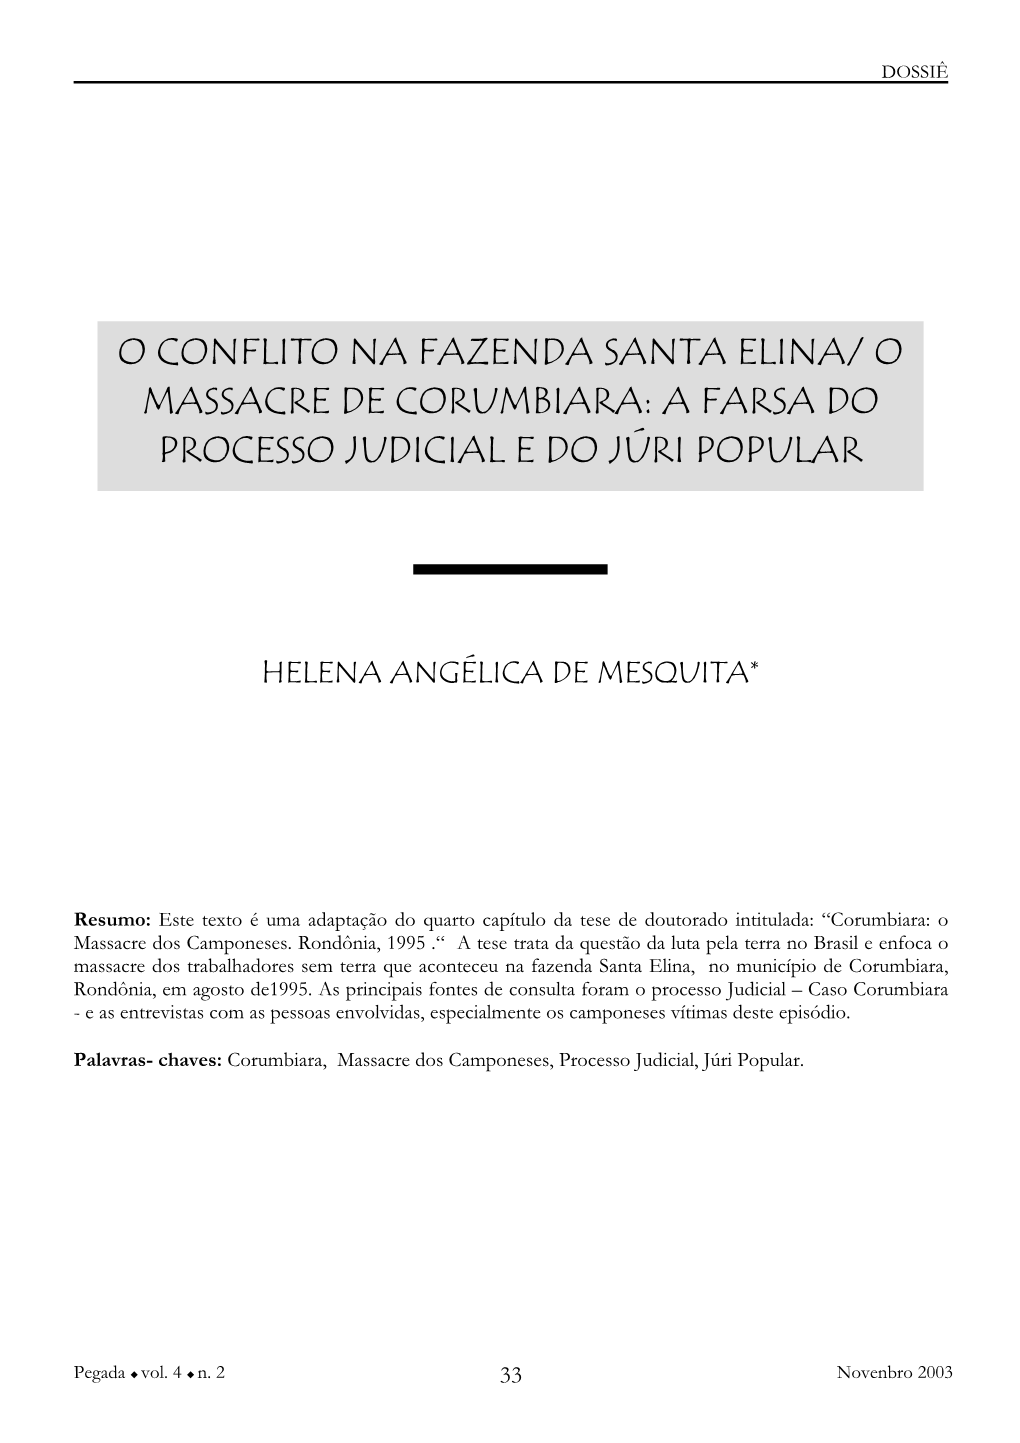 O Conflito Na Fazenda Santa Elina/ O Massacre De Corumbiara: a Farsa Do Processo Judicial E Do Júri Popular